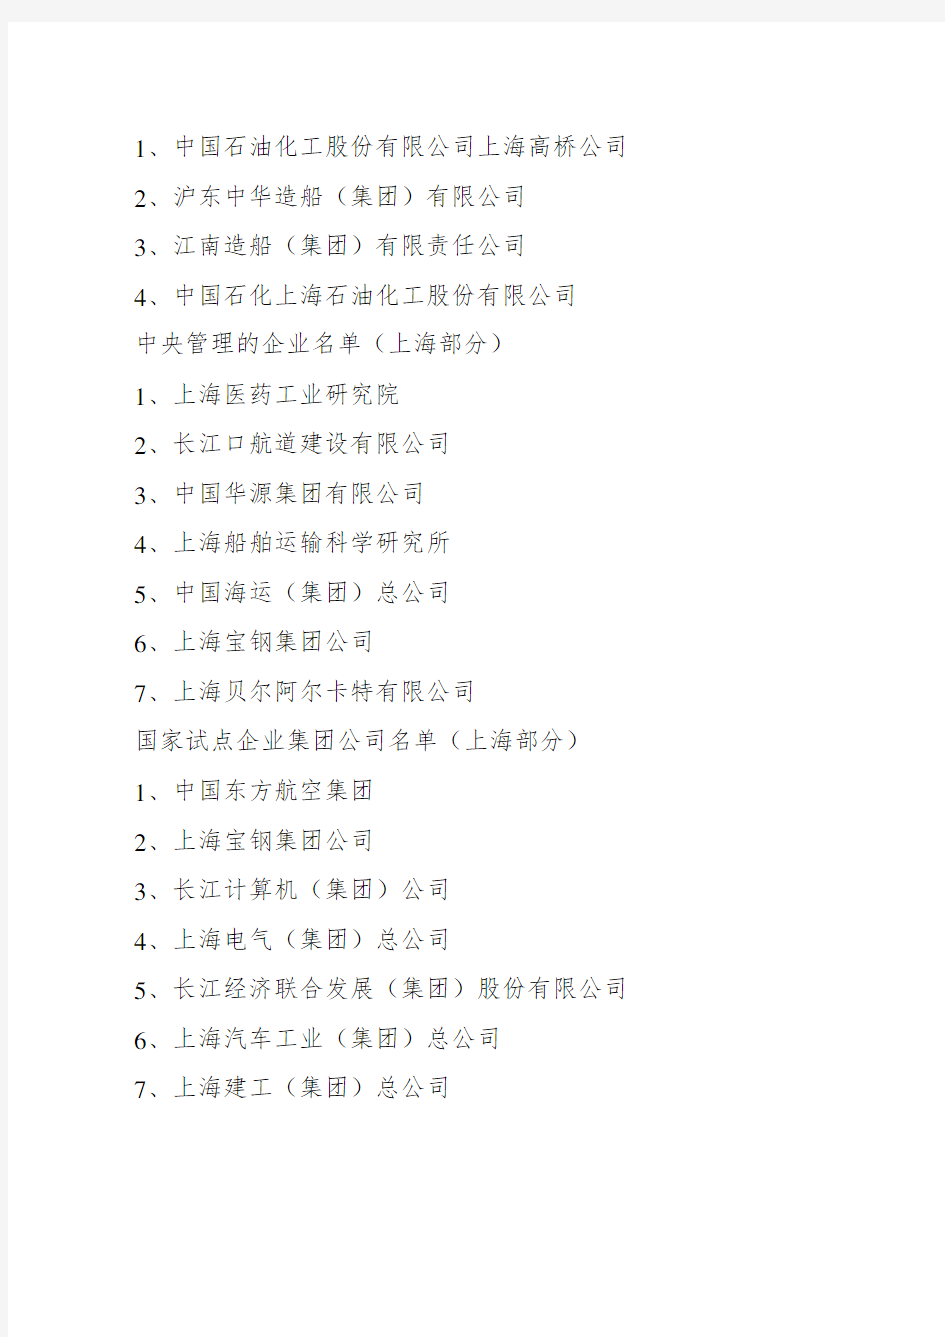 上海国有企业名录